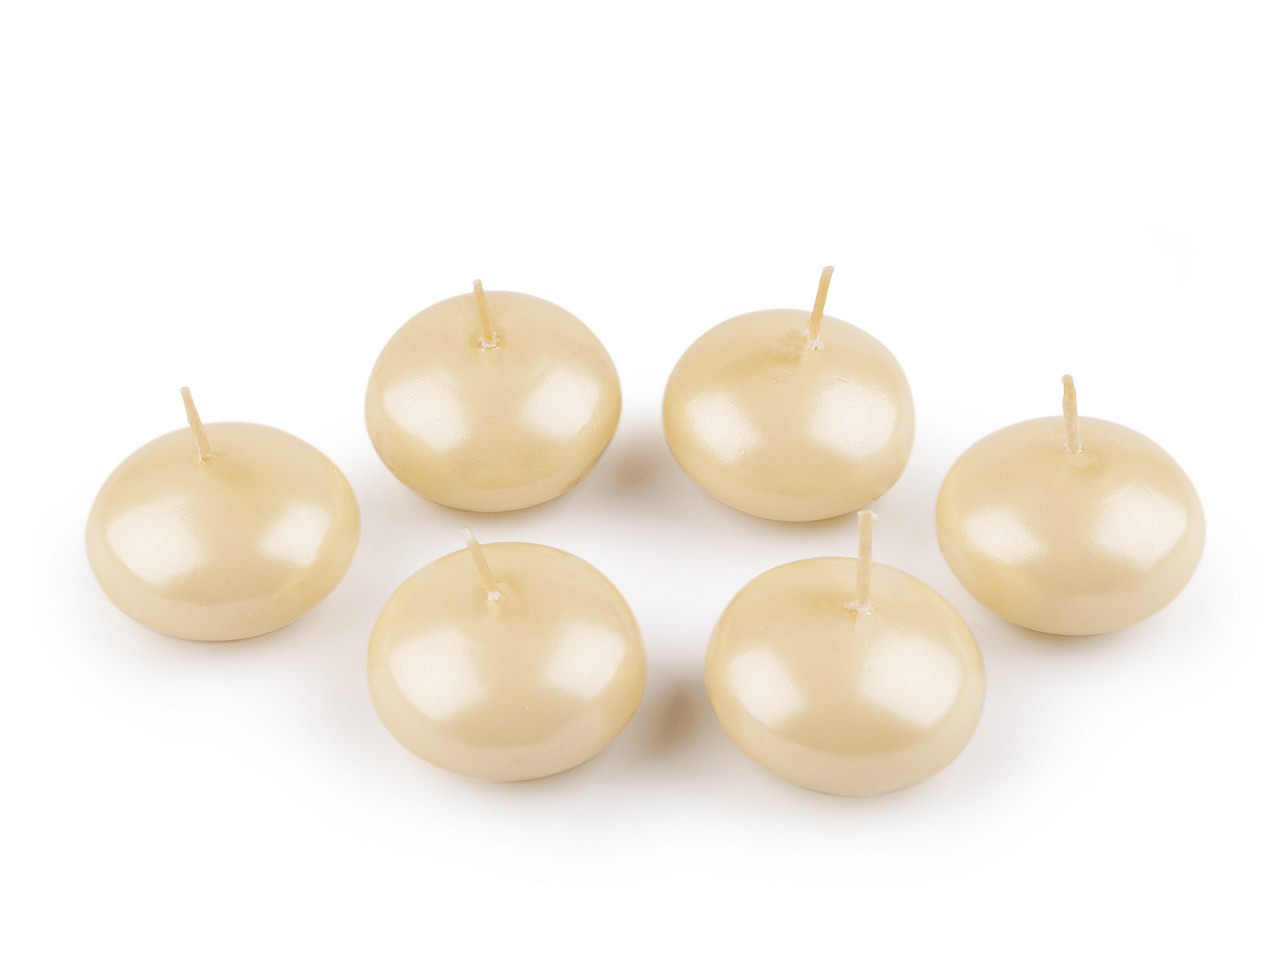 Plovoucí svíčky Ø4,5 cm, barva 4 ecru perleť